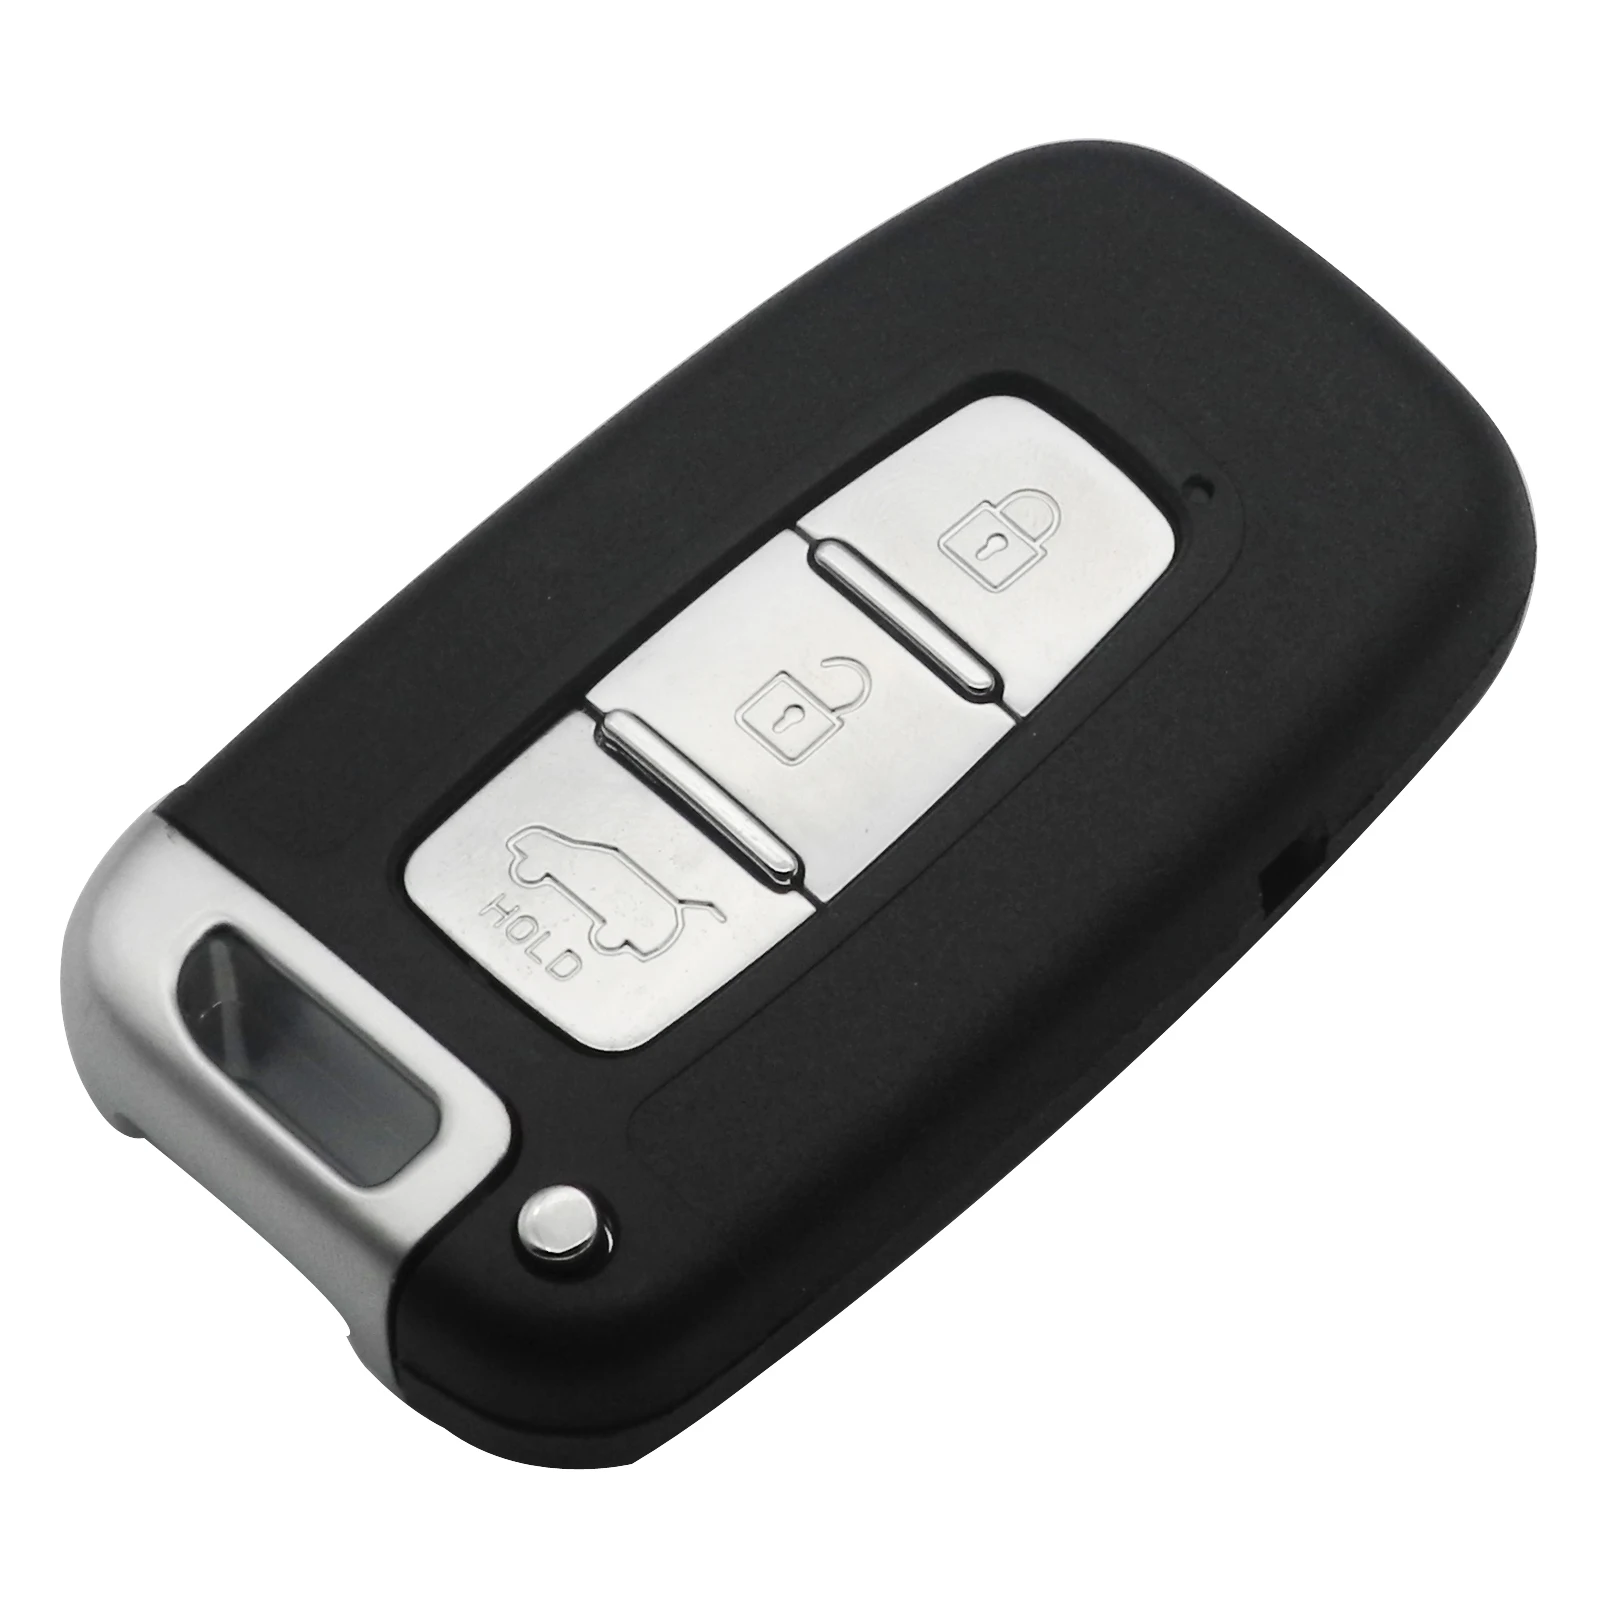 Jinyuqin 2/3/4 кнопки смарт дистанционные брелки для ключей в виде ракушки для hyundai IX35 генезис купе Sonata Elantra Veloster HY15 HY15R TOY40 необработанное лезвие - Количество кнопок: 3 Кнопки